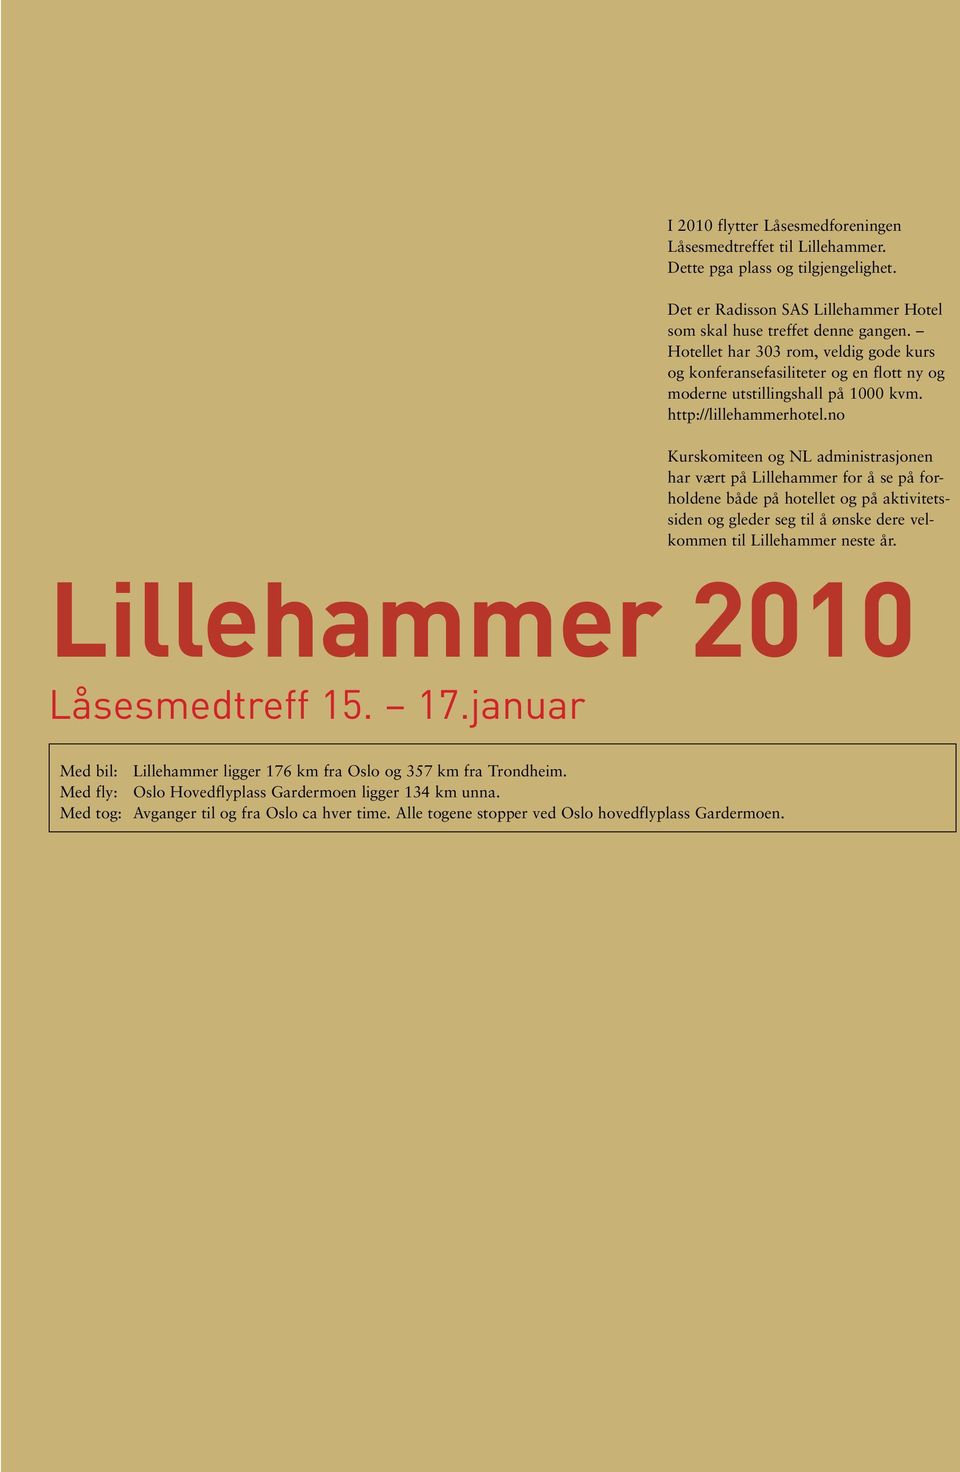 no Kurskomiteen og NL administrasjonen har vært på Lillehammer for å se på forholdene både på hotellet og på aktivitetssiden og gleder seg til å ønske dere velkommen til Lillehammer neste år.